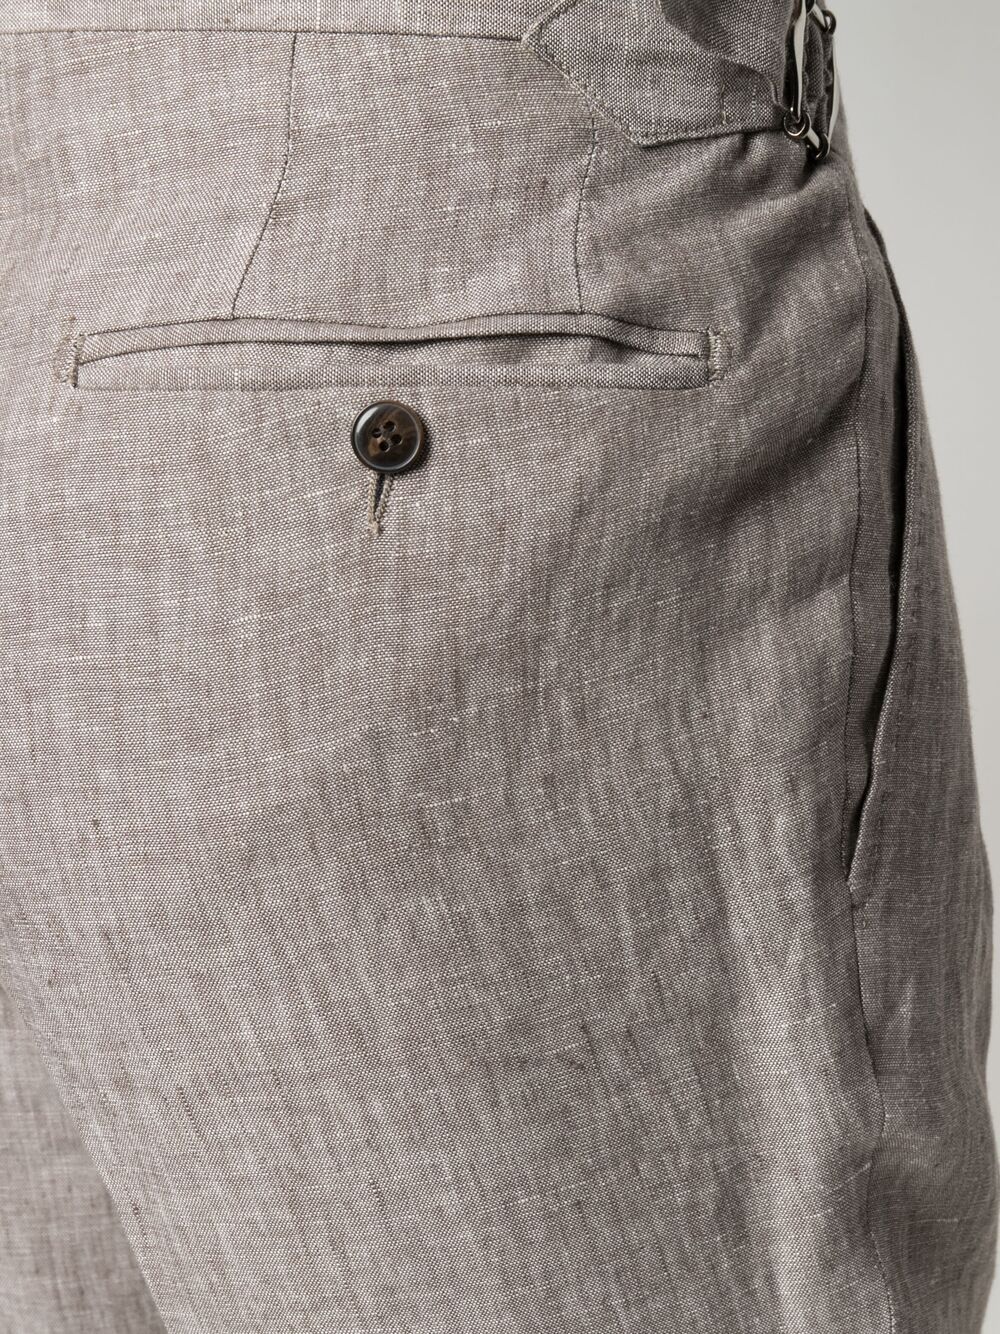 фото Luigi bianchi mantova брюки со складками и пряжкой